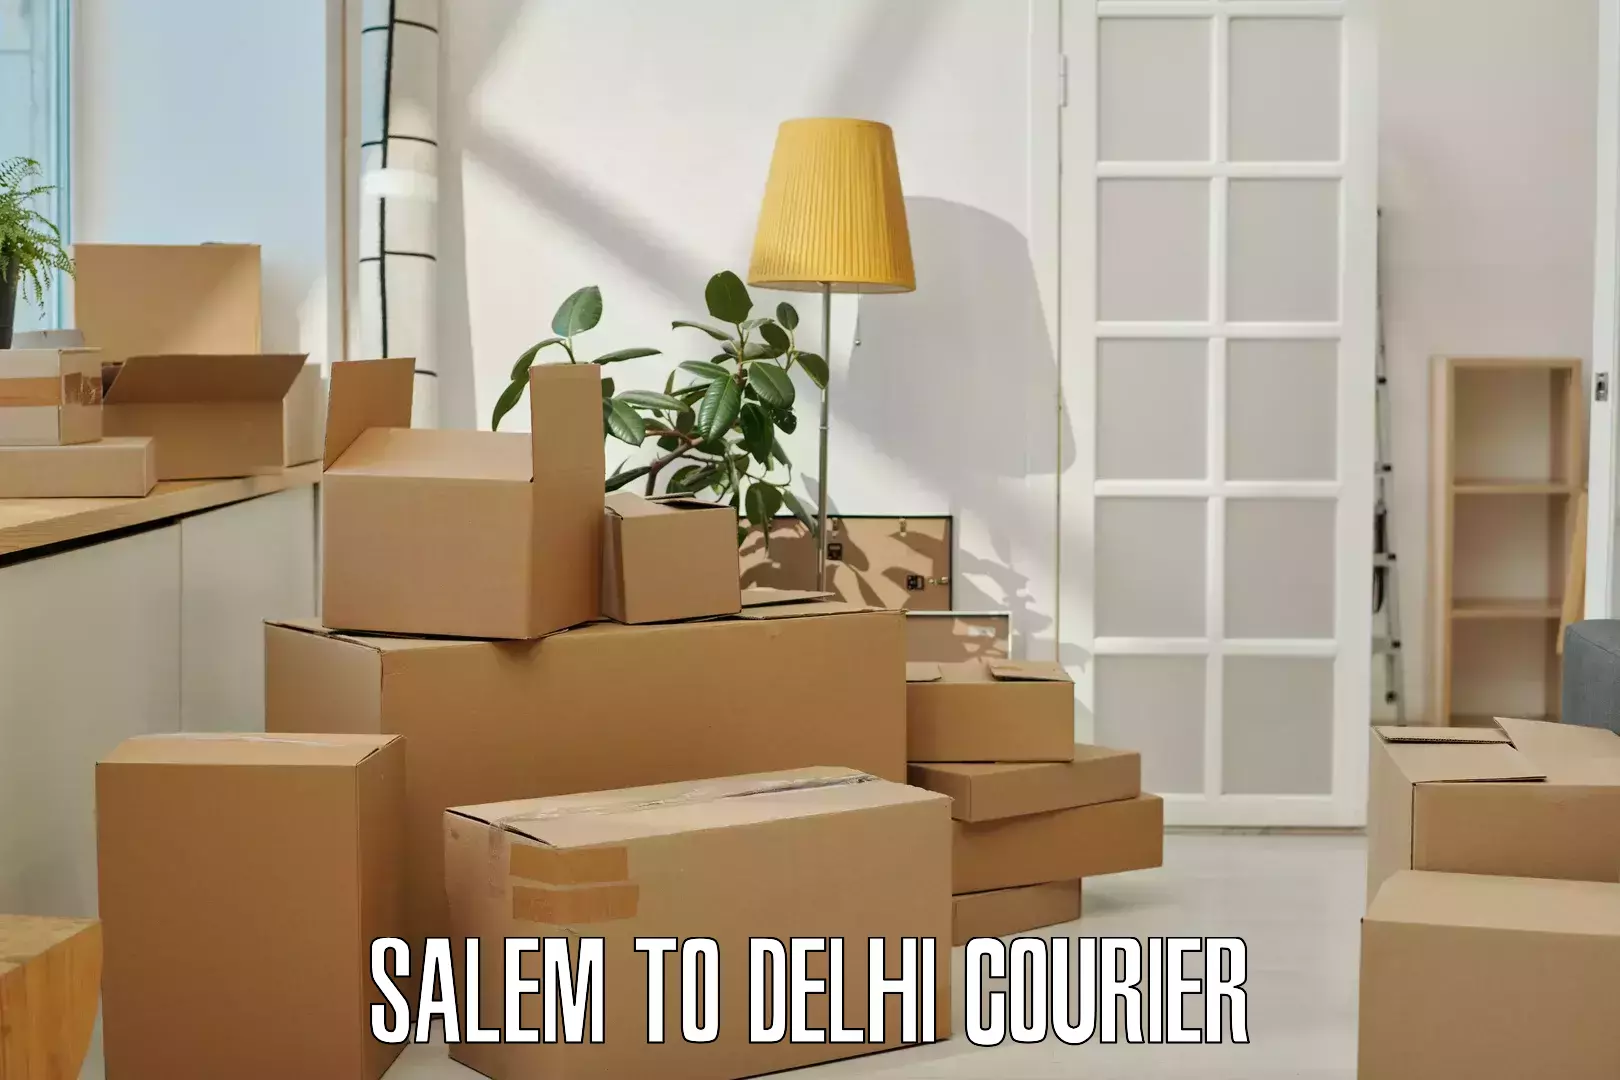 24-hour courier service Salem to Delhi